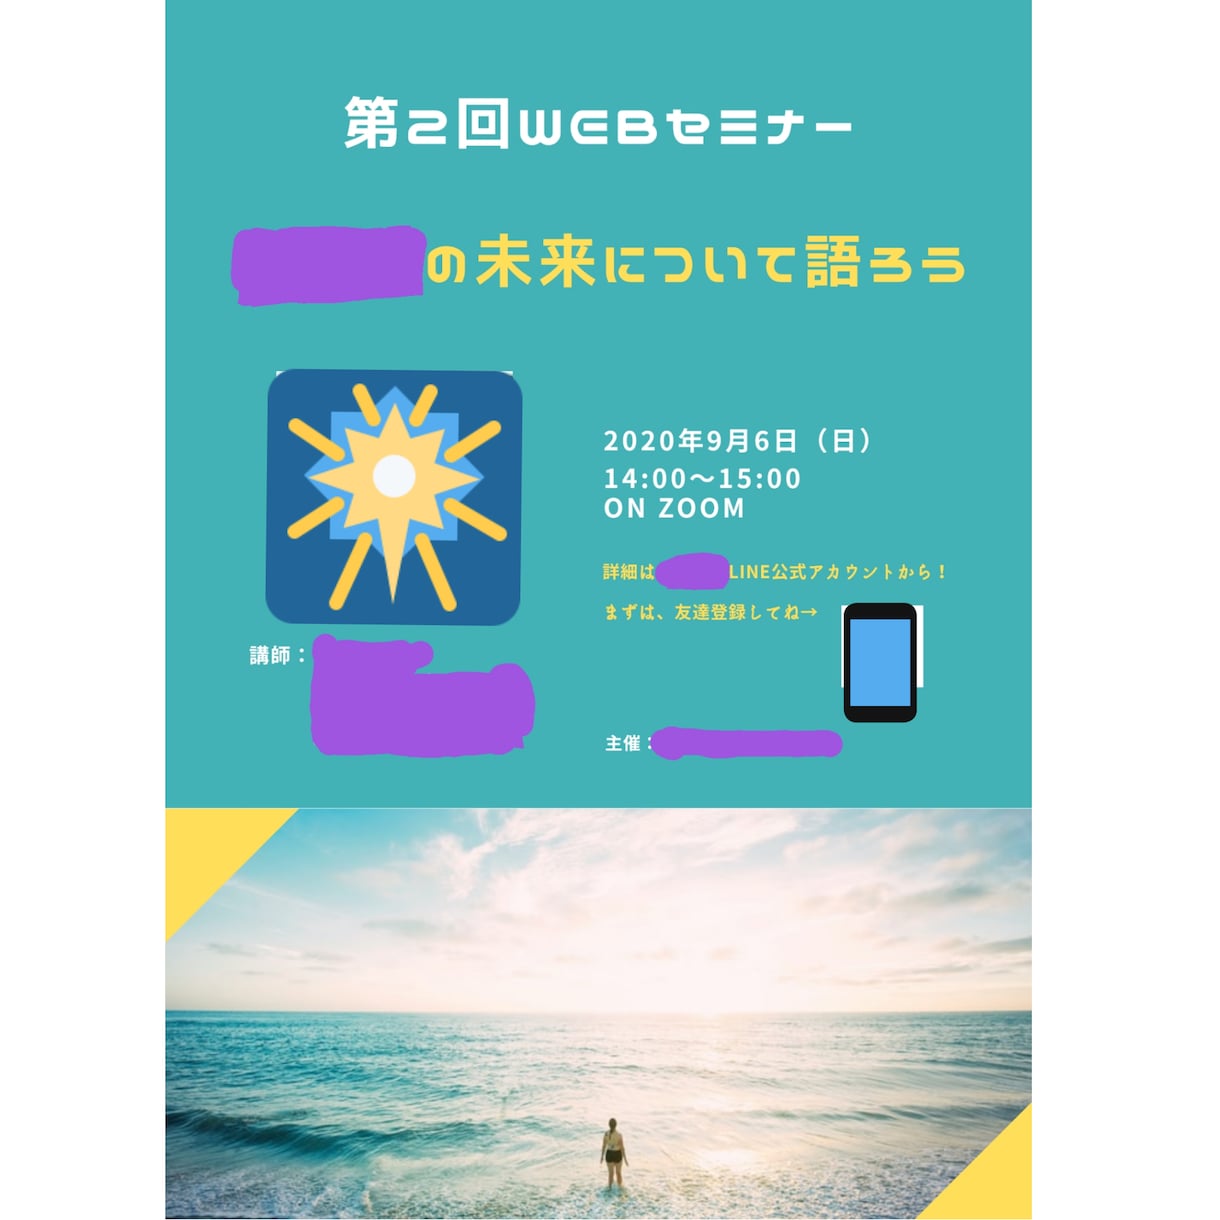 イベントやセミナーのポスターデザインをします 中国語・英語も対応できます。迅速、丁寧をモットーに対応！ イメージ1